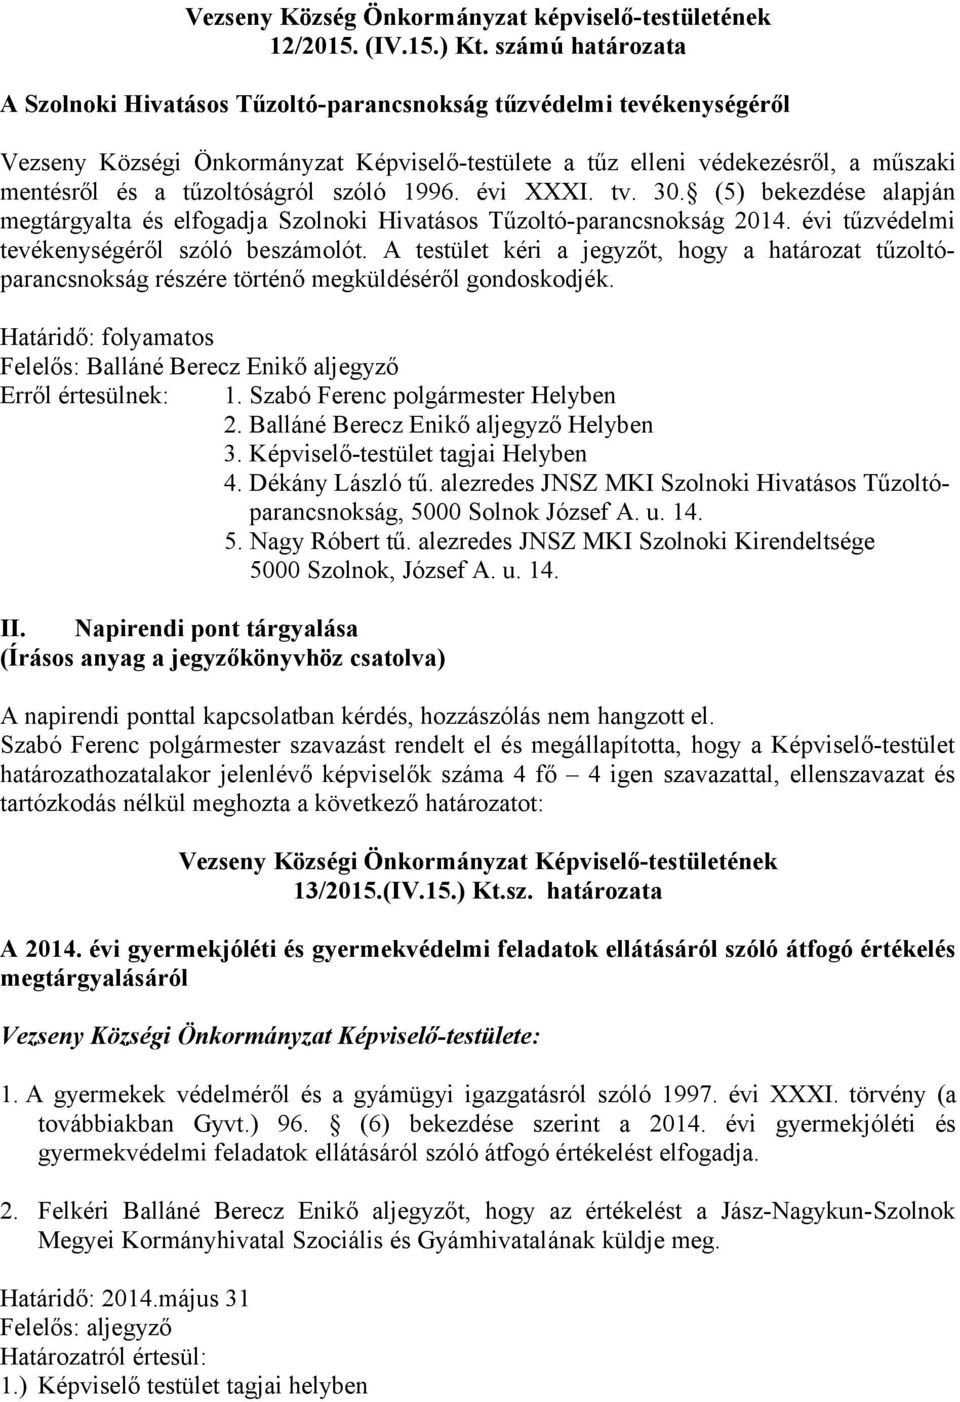 tűzoltóságról szóló 1996. évi XXXI. tv. 30. (5) bekezdése alapján megtárgyalta és elfogadja Szolnoki Hivatásos Tűzoltó-parancsnokság 2014. évi tűzvédelmi tevékenységéről szóló beszámolót.